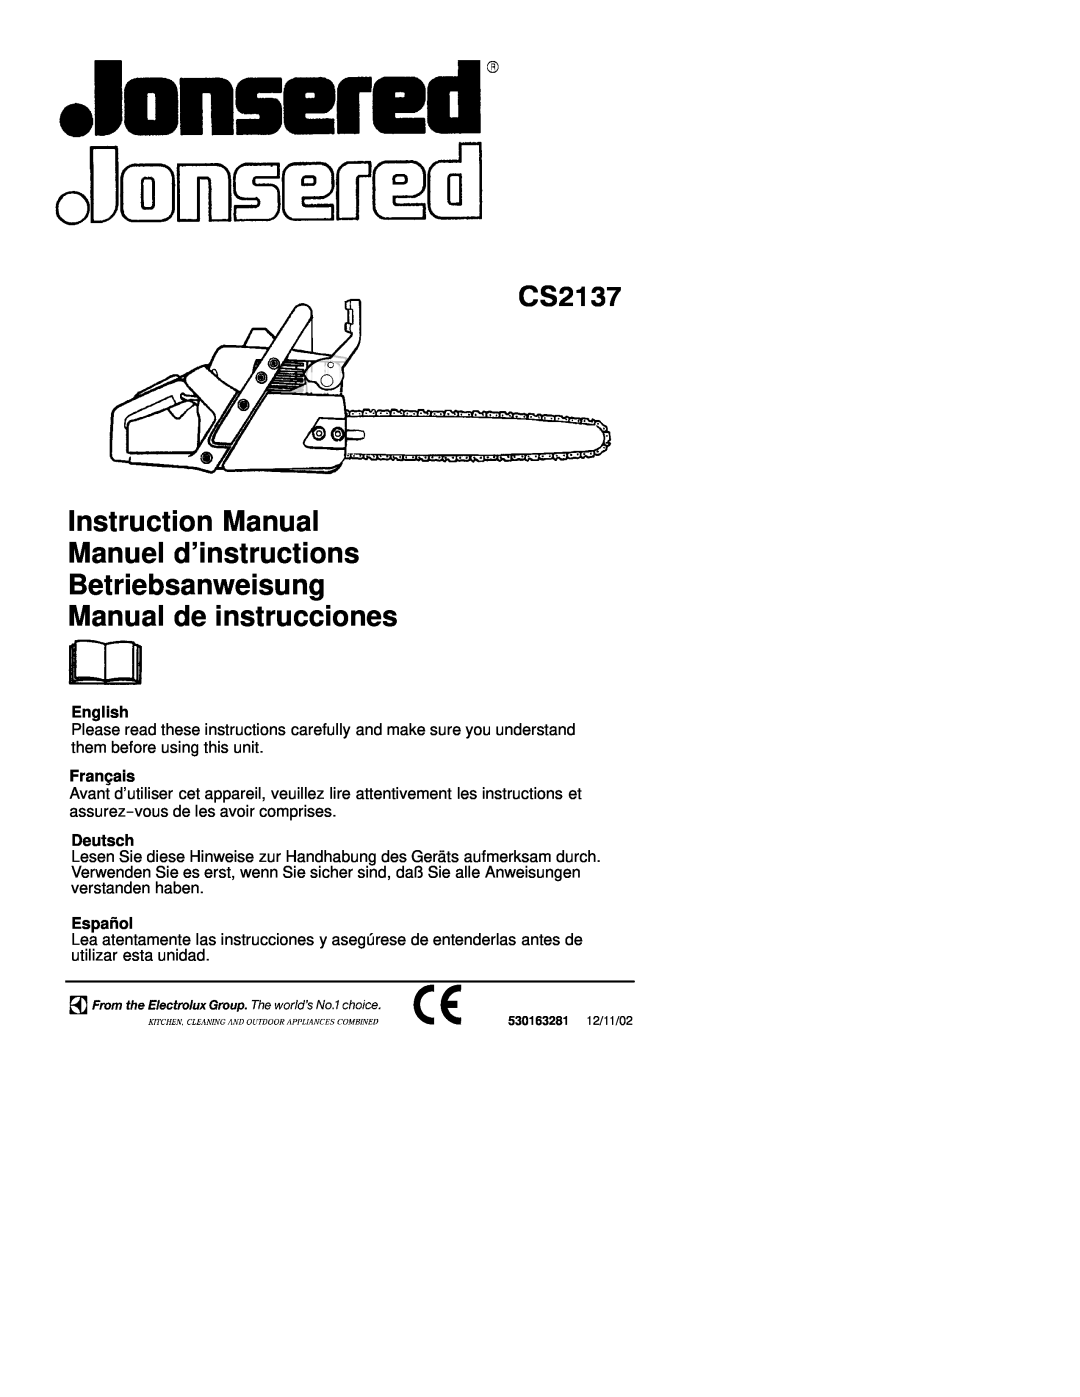 Jonsered CS 2137 instruction manual English, Français, Deutsch, Español, CS2137, Manual de instrucciones 